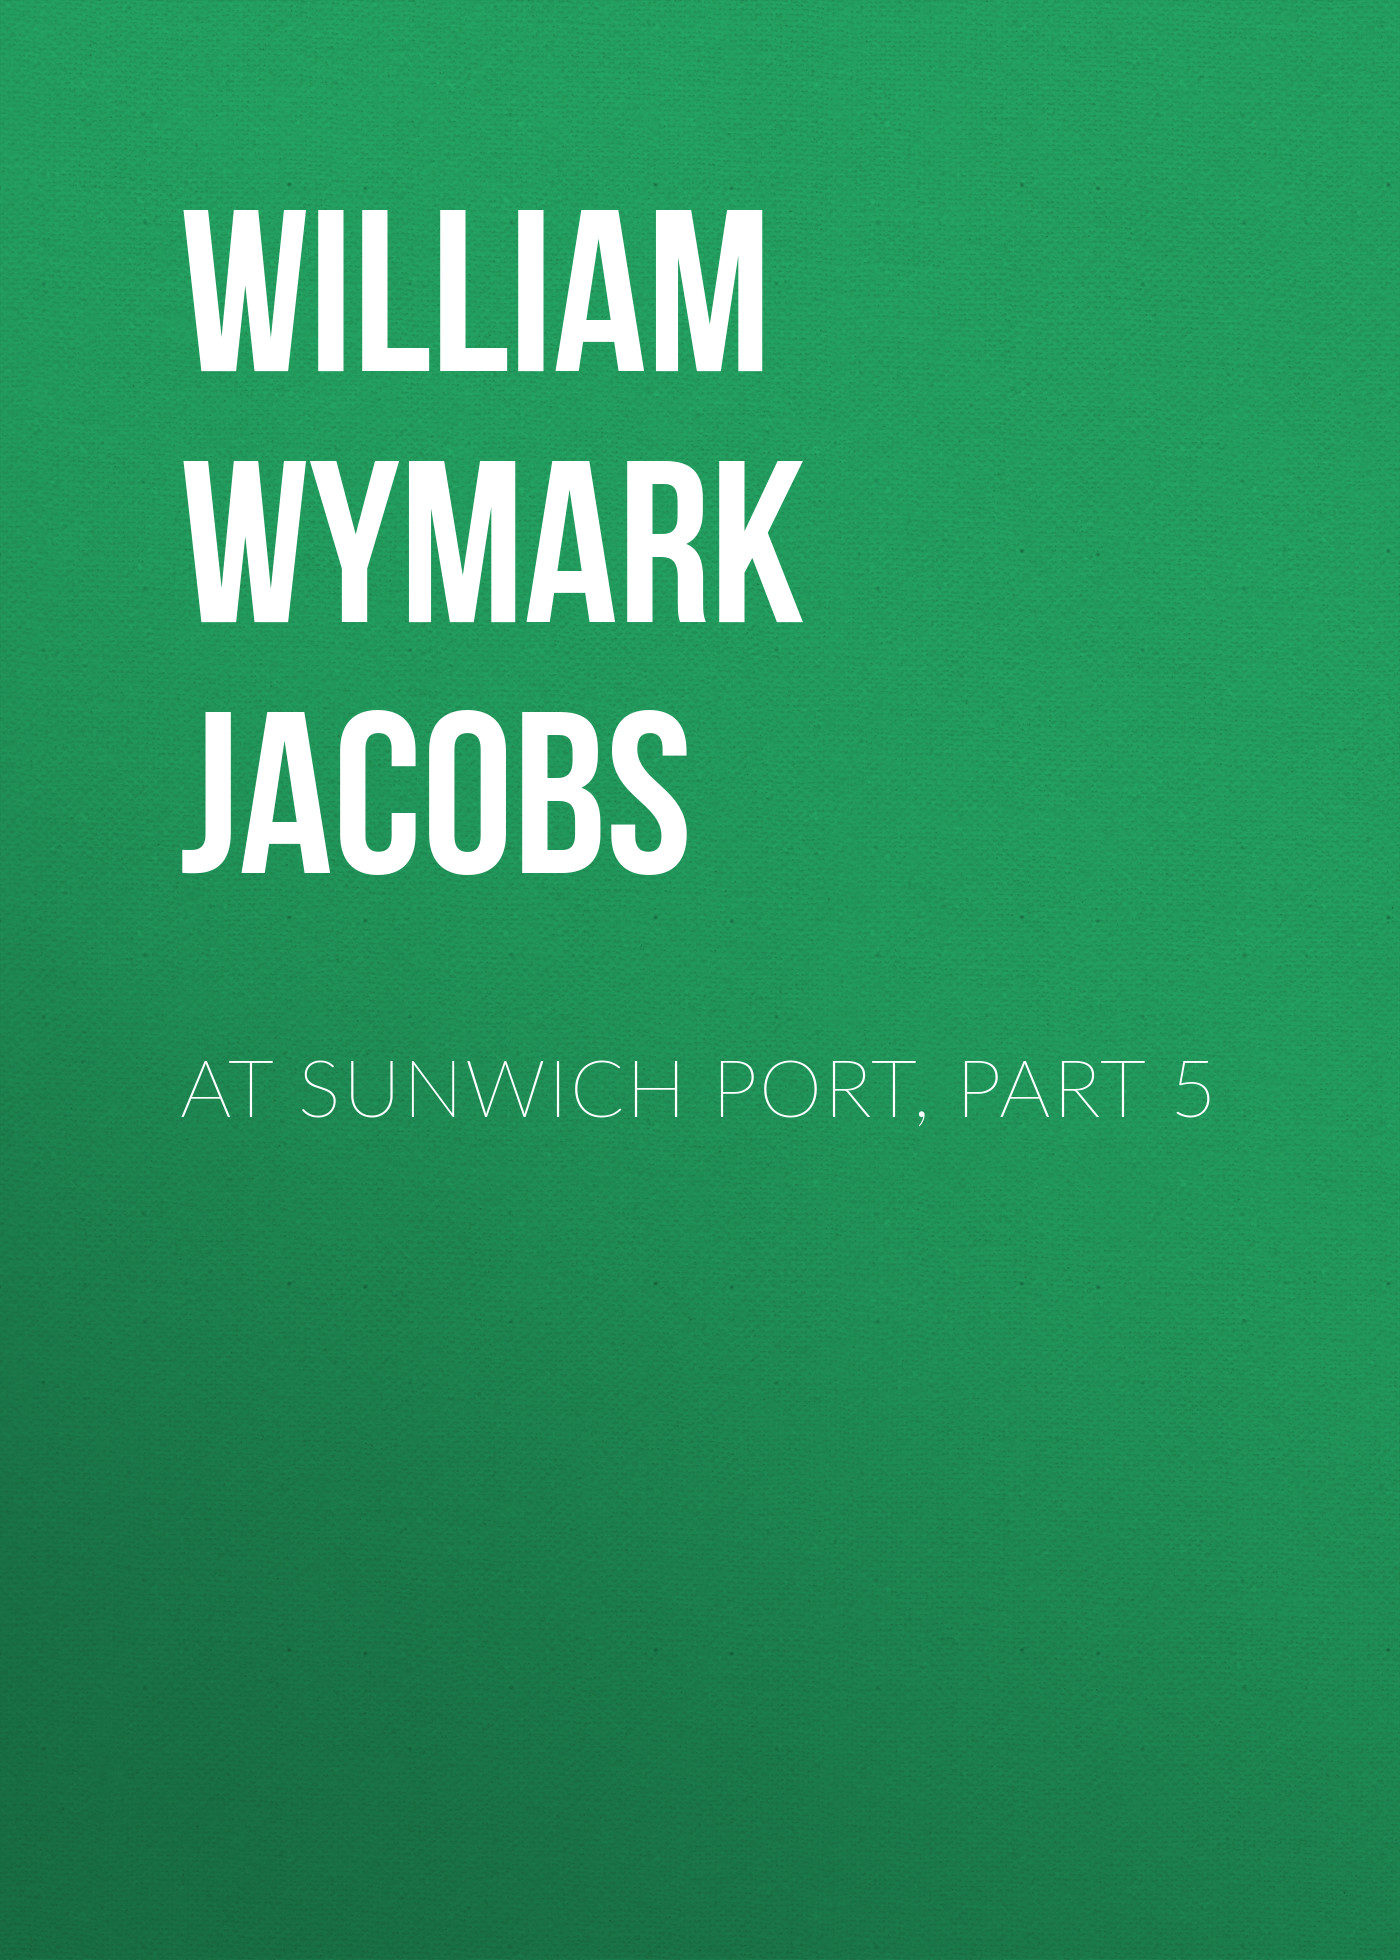 Книга At Sunwich Port, Part 5 из серии , созданная William Wymark Jacobs, может относится к жанру Зарубежная классика, Зарубежная старинная литература. Стоимость электронной книги At Sunwich Port, Part 5 с идентификатором 34844094 составляет 0 руб.